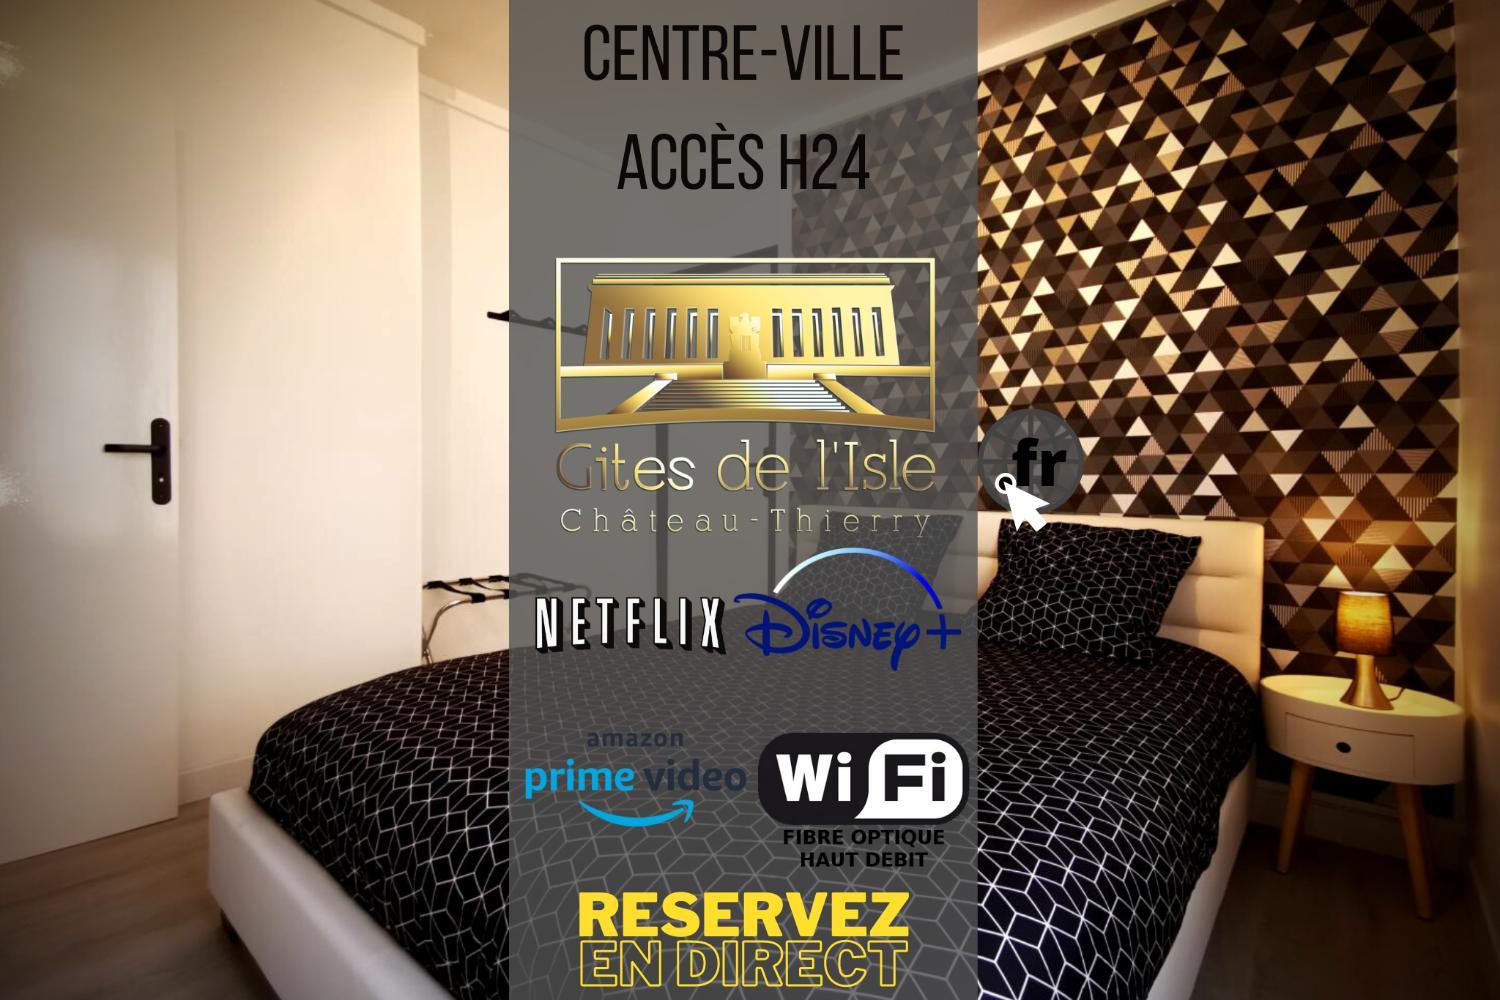 Gites de l'isle Centre-Ville - WiFi Fibre - Netflix, Disney, Amazon - Sejours Pro, Aisne